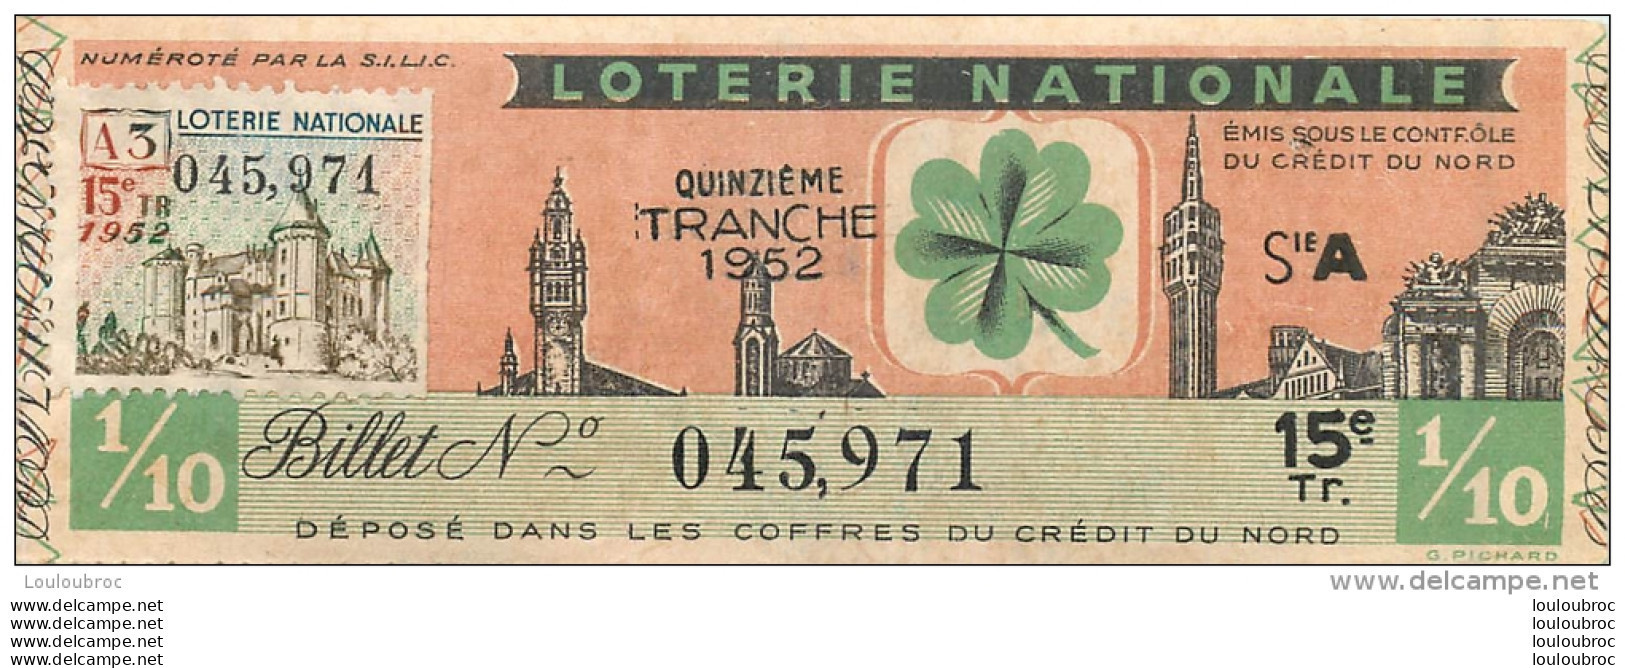 BILLET DE LOTERIE NATIONALE 1952  15E TRANCHE - Billets De Loterie